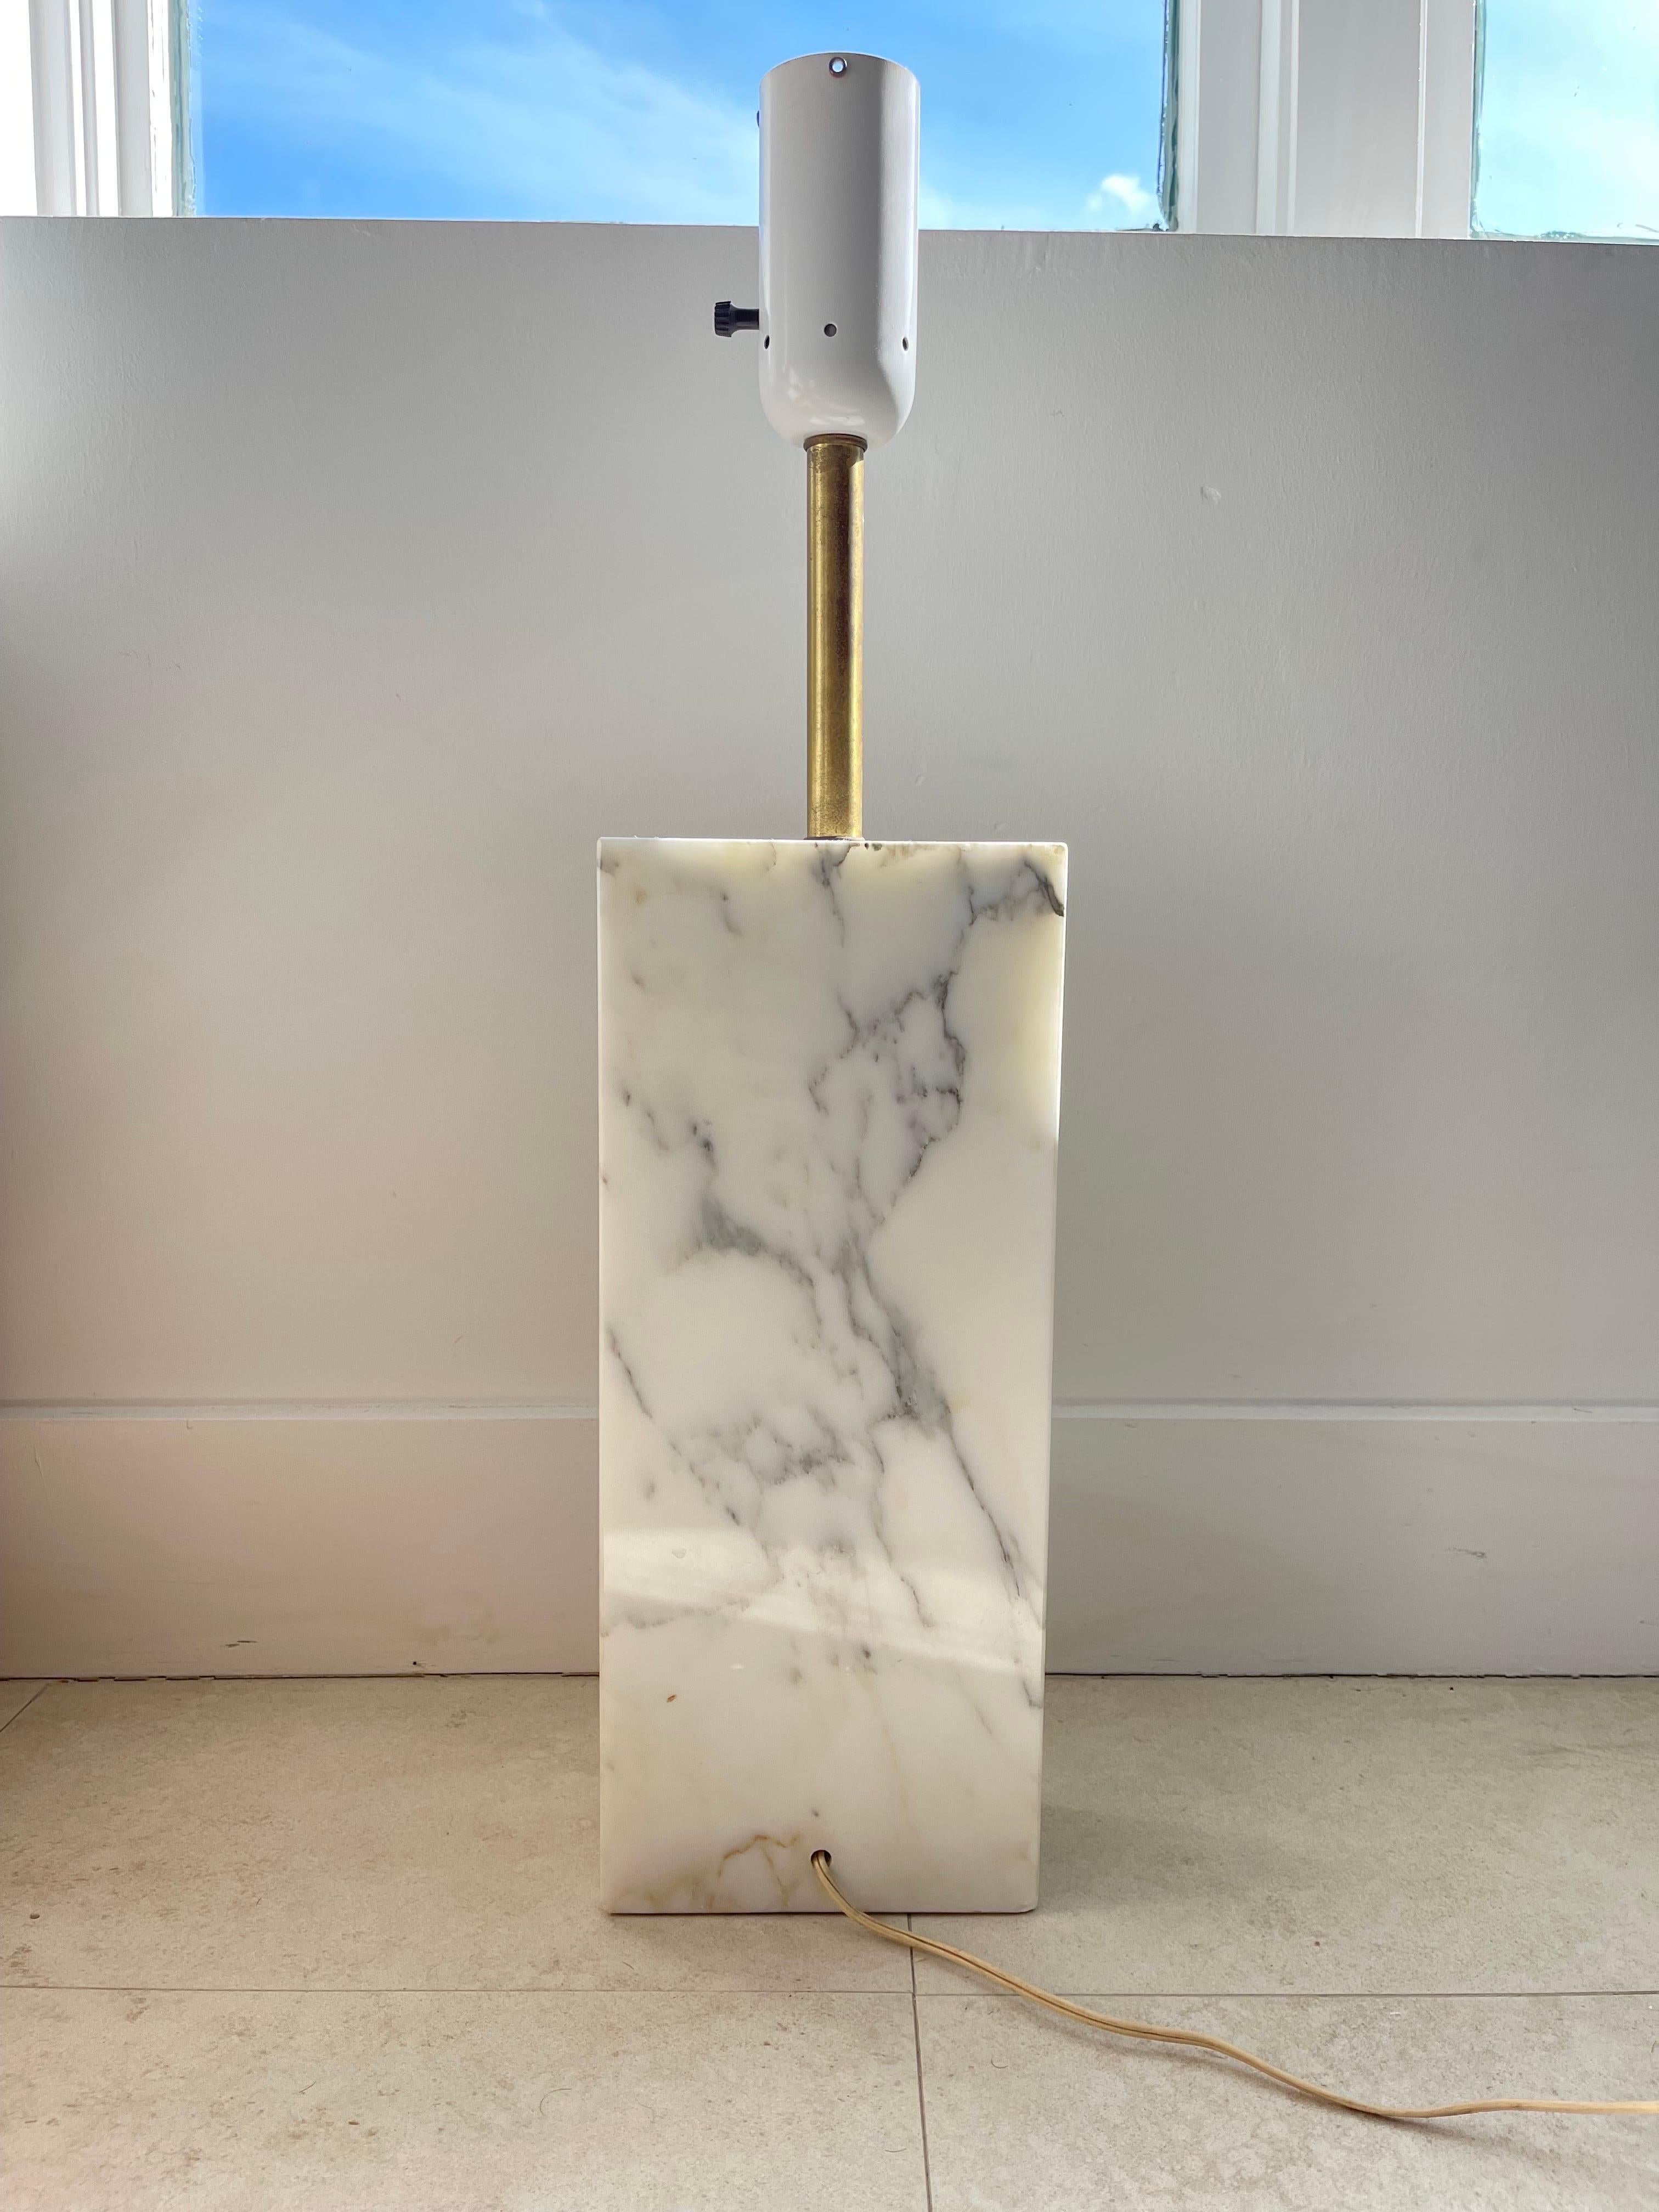 Brass Monolithic Elizabeth Kauffer Statuary Marble Table Lamp for Nessen Studio, 1950s For Sale